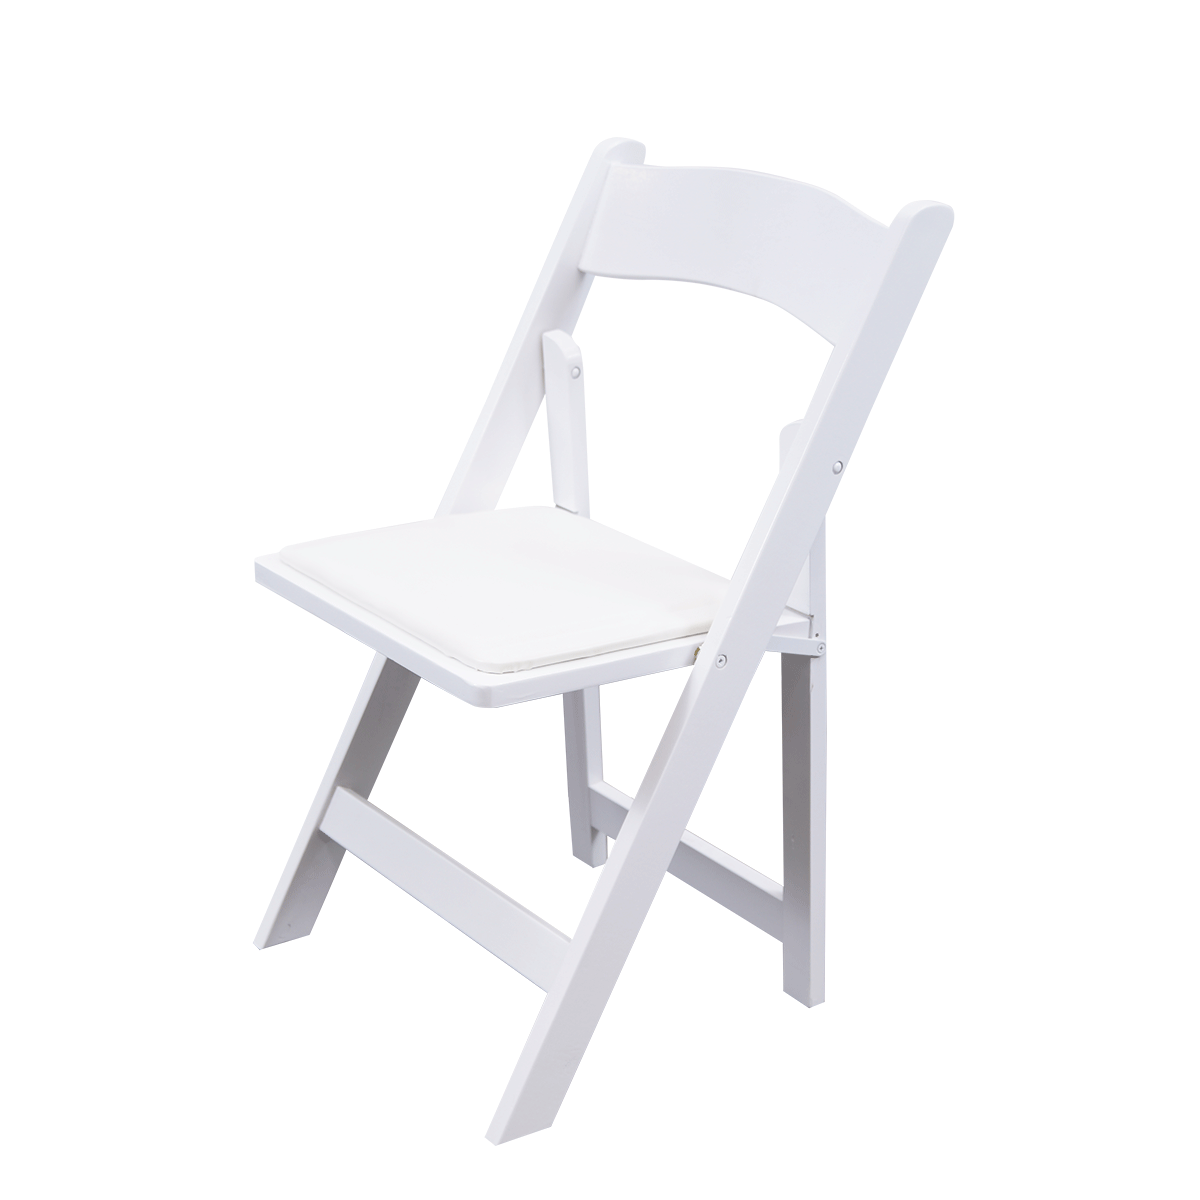 Bistrostuhl, Holz, weiß, klappbar mit Sitzpolster